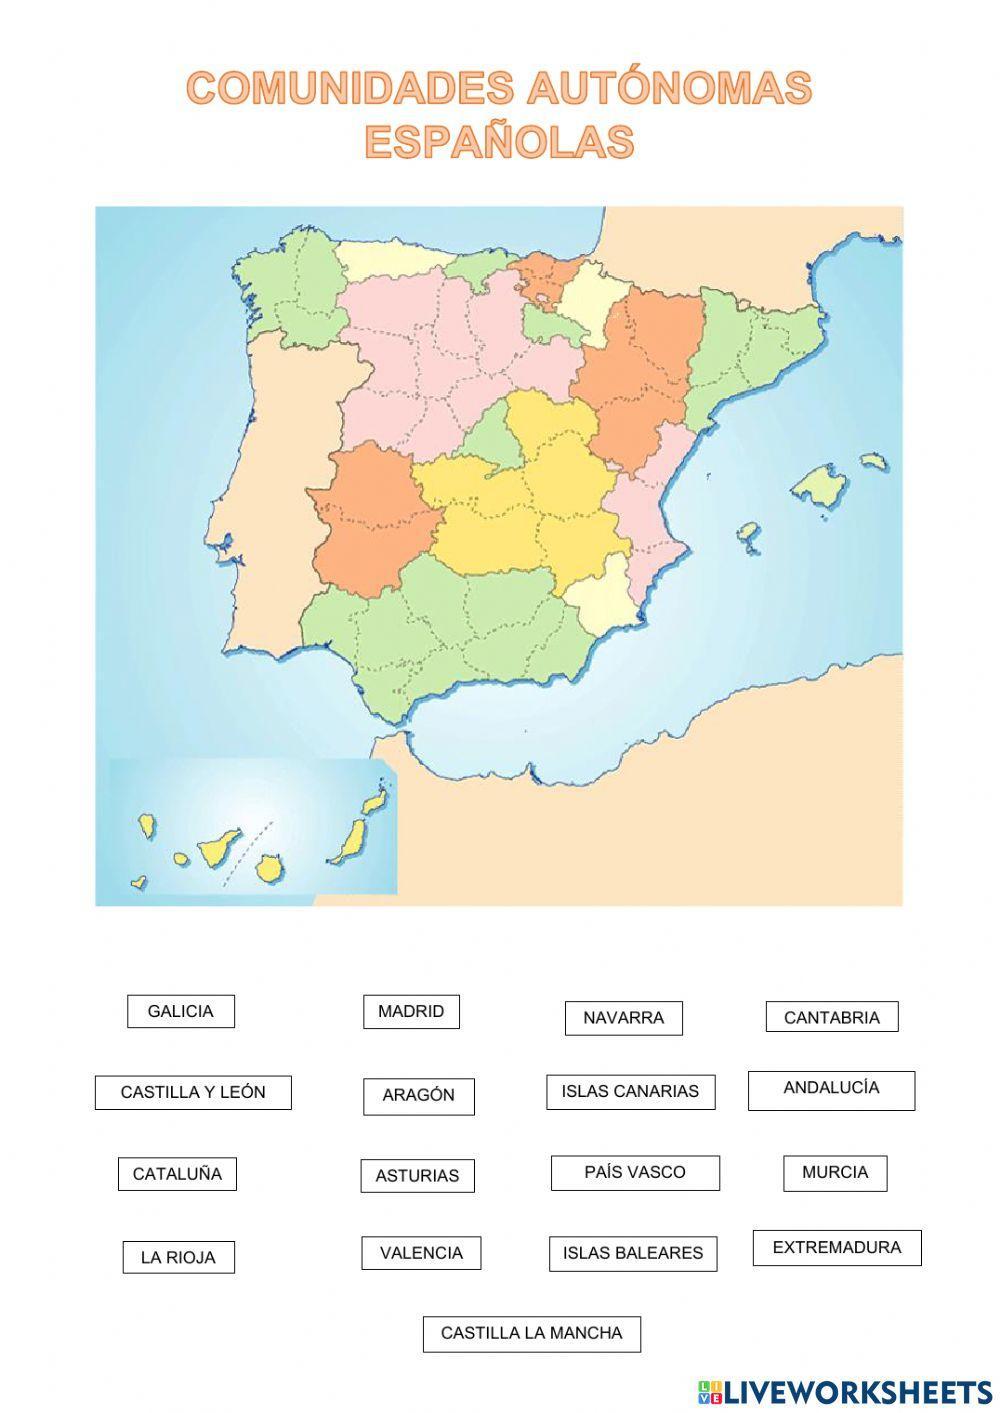 Comunidades autónomas españolas 